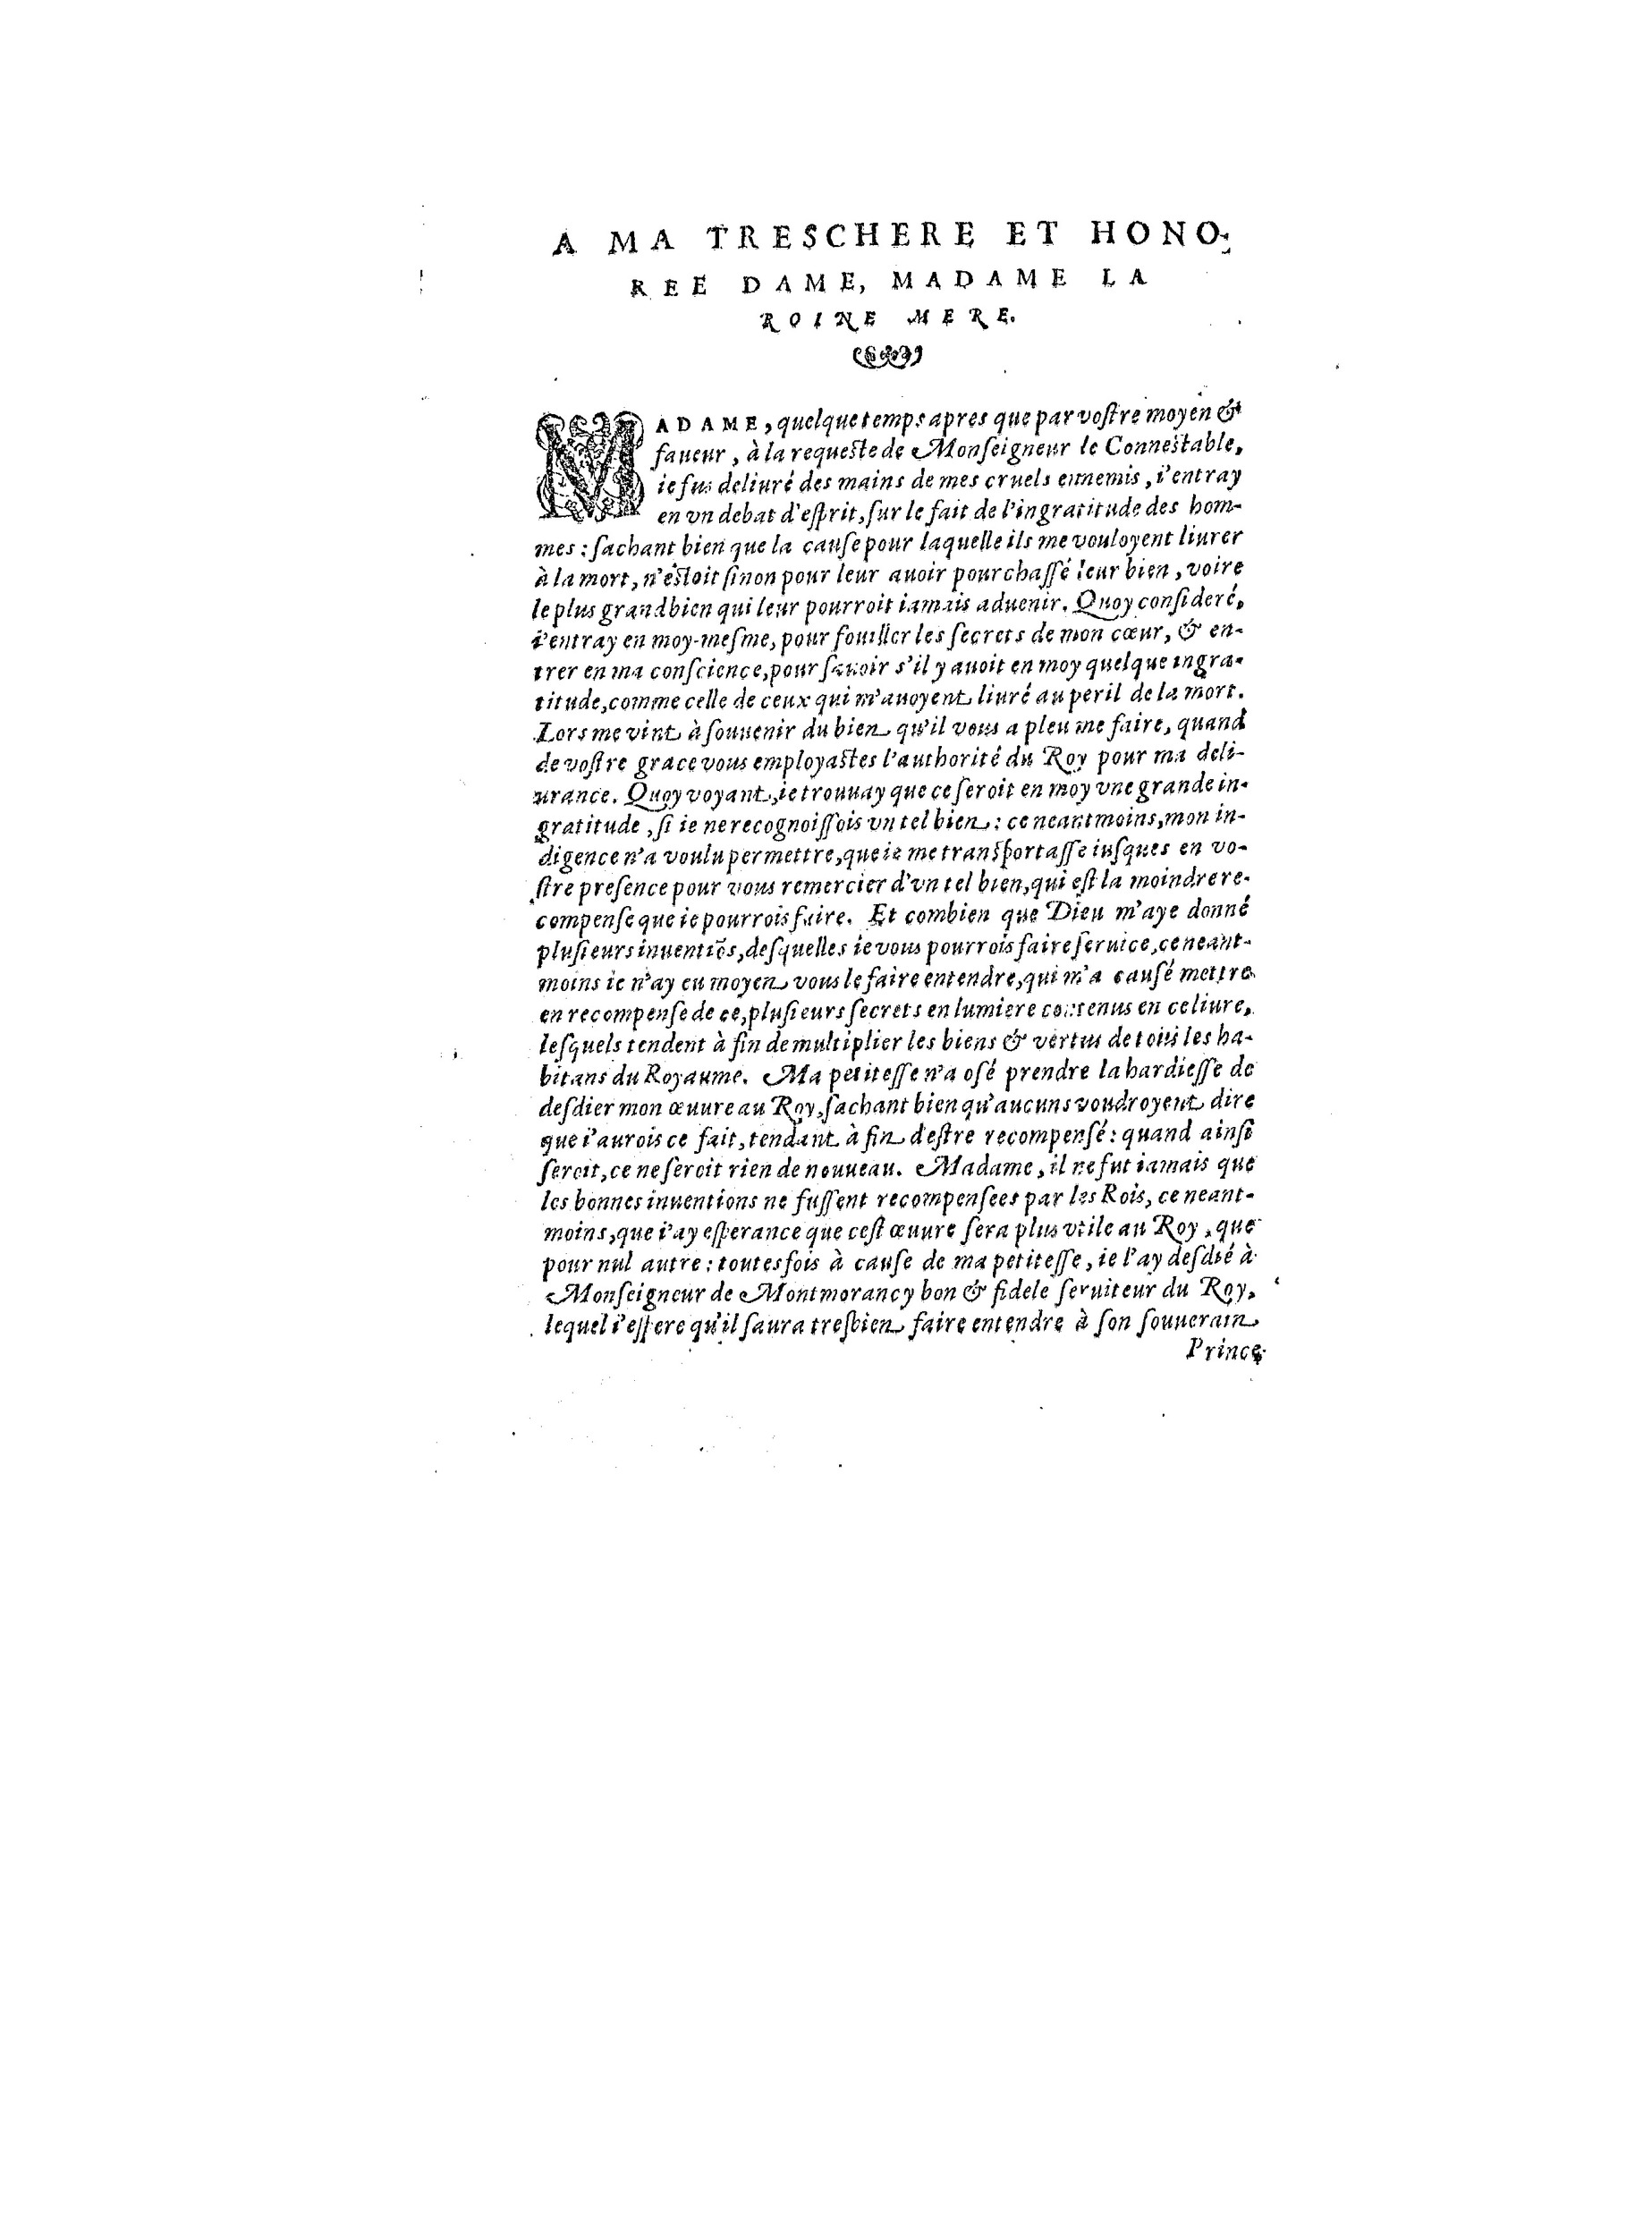 1563 Recepte veritable Berton_BNF_Page_009.jpg